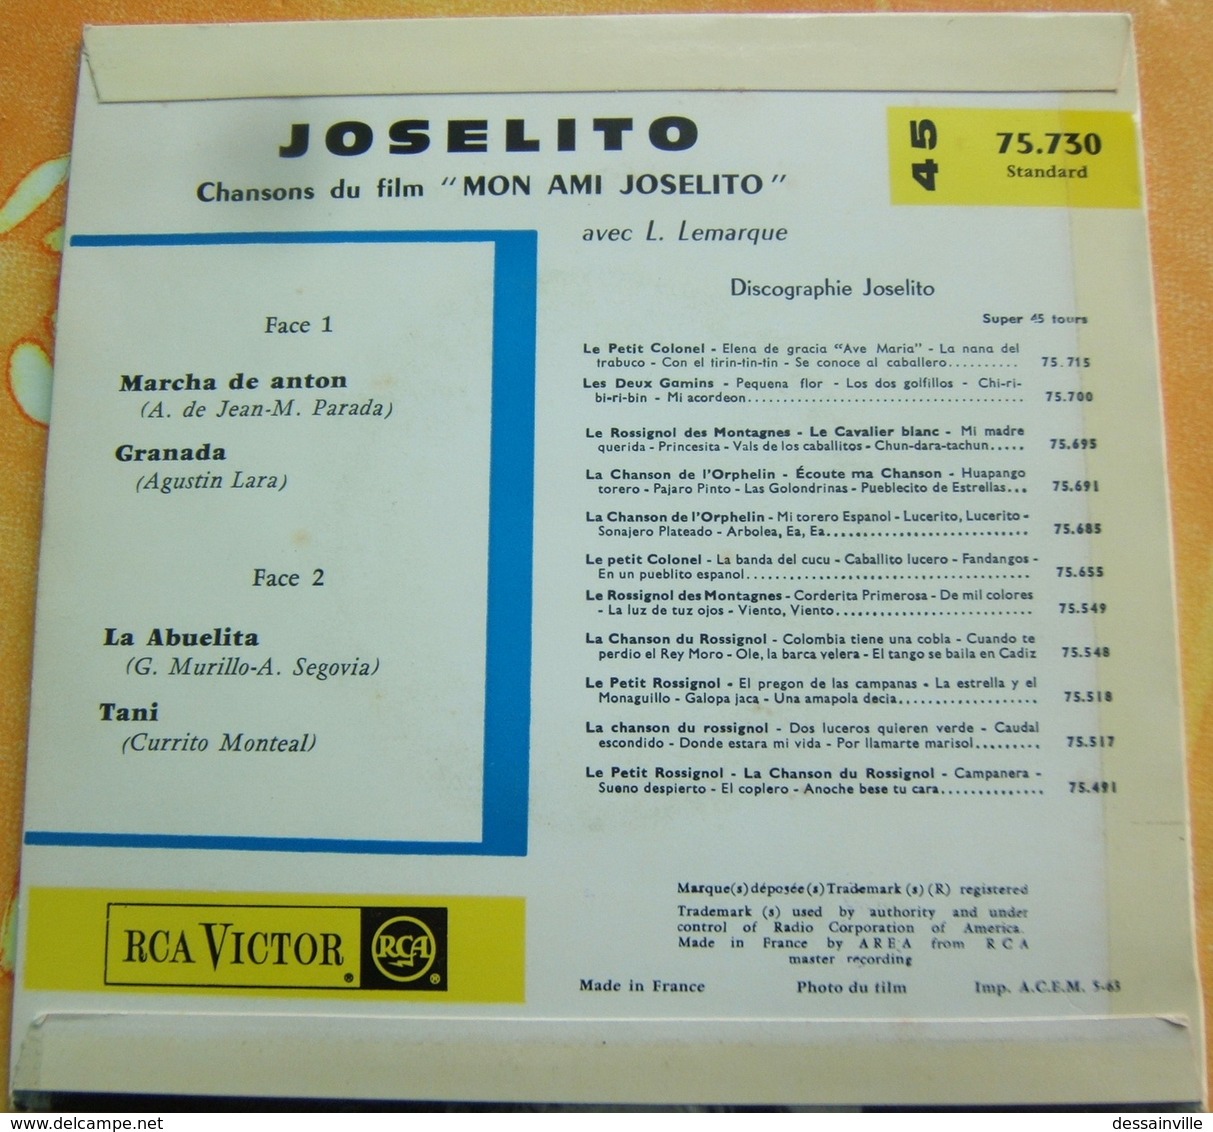 45 Tours - JOSELITO Chansons Du Film (Canciones De La Pelicula) MON AMI JOSELITO - RCA 75.730 - Otros - Canción Española